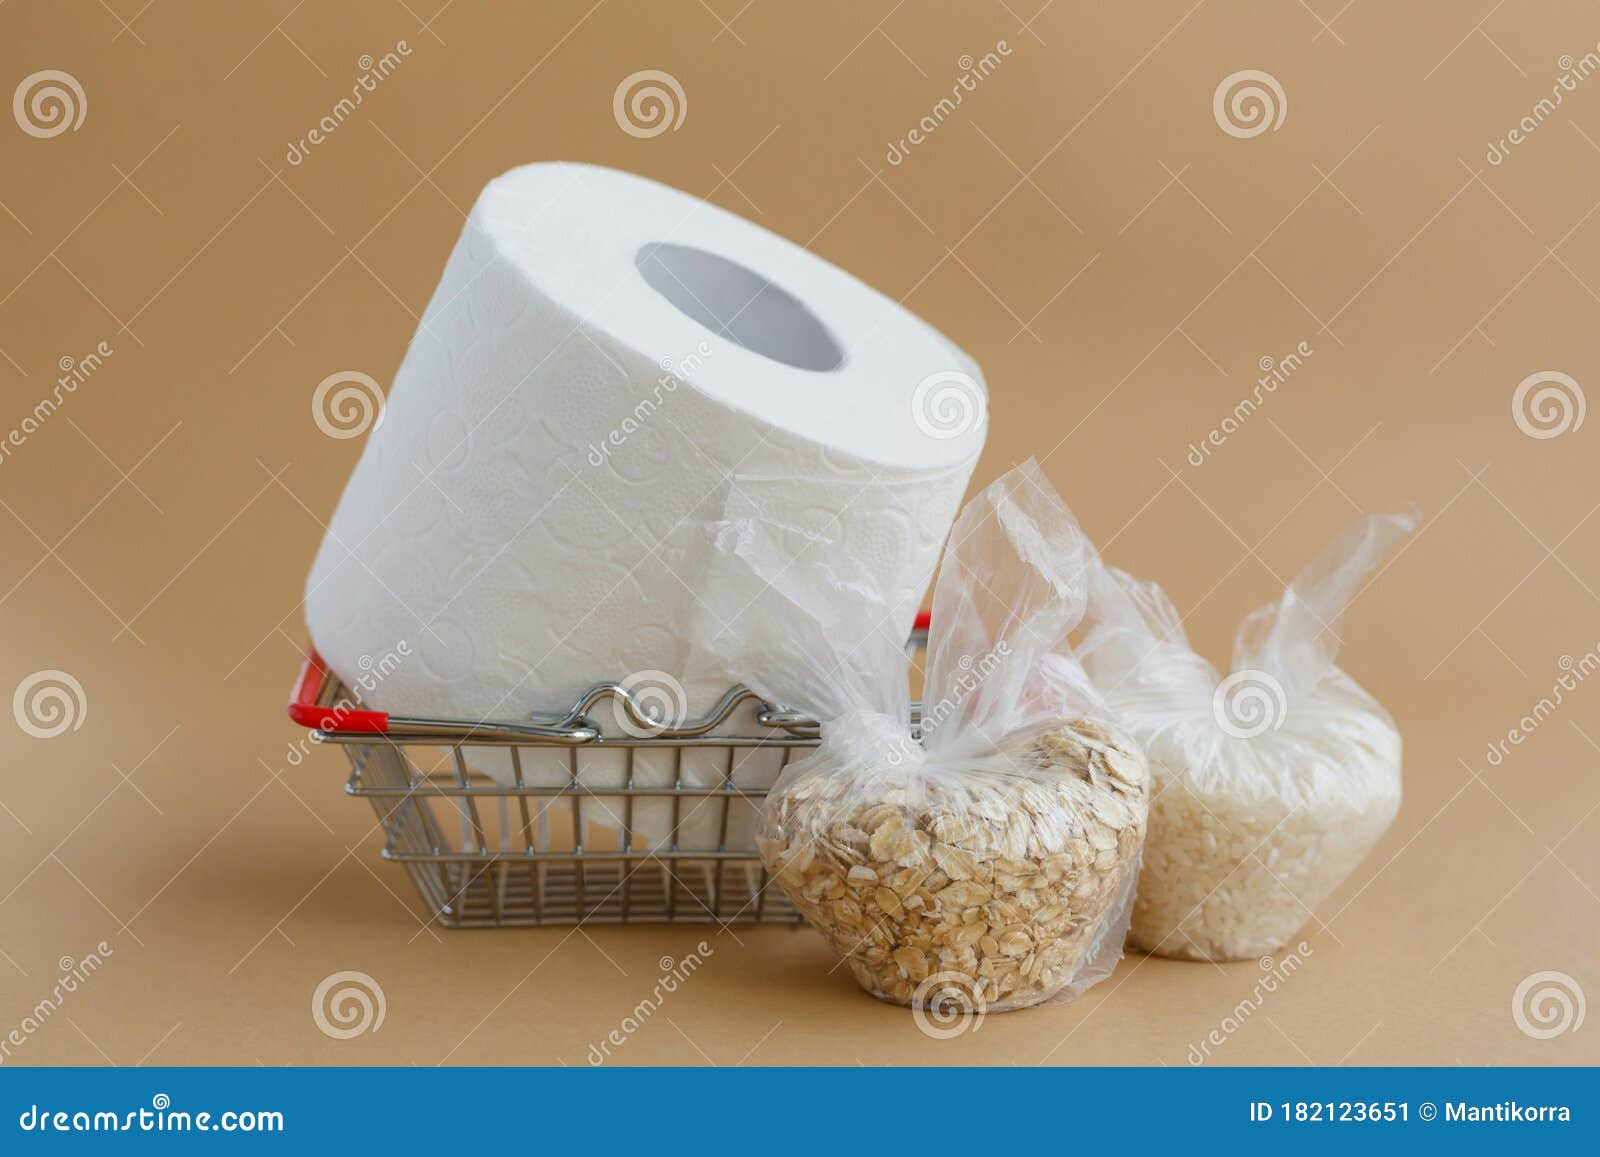 Papel Higiénico En Una Cesta De Comestibles Y Varios Cereales En Bolsas De  Plástico Con Fondo Marrón Imagen de archivo - Imagen de comestibles, mijo:  182123651